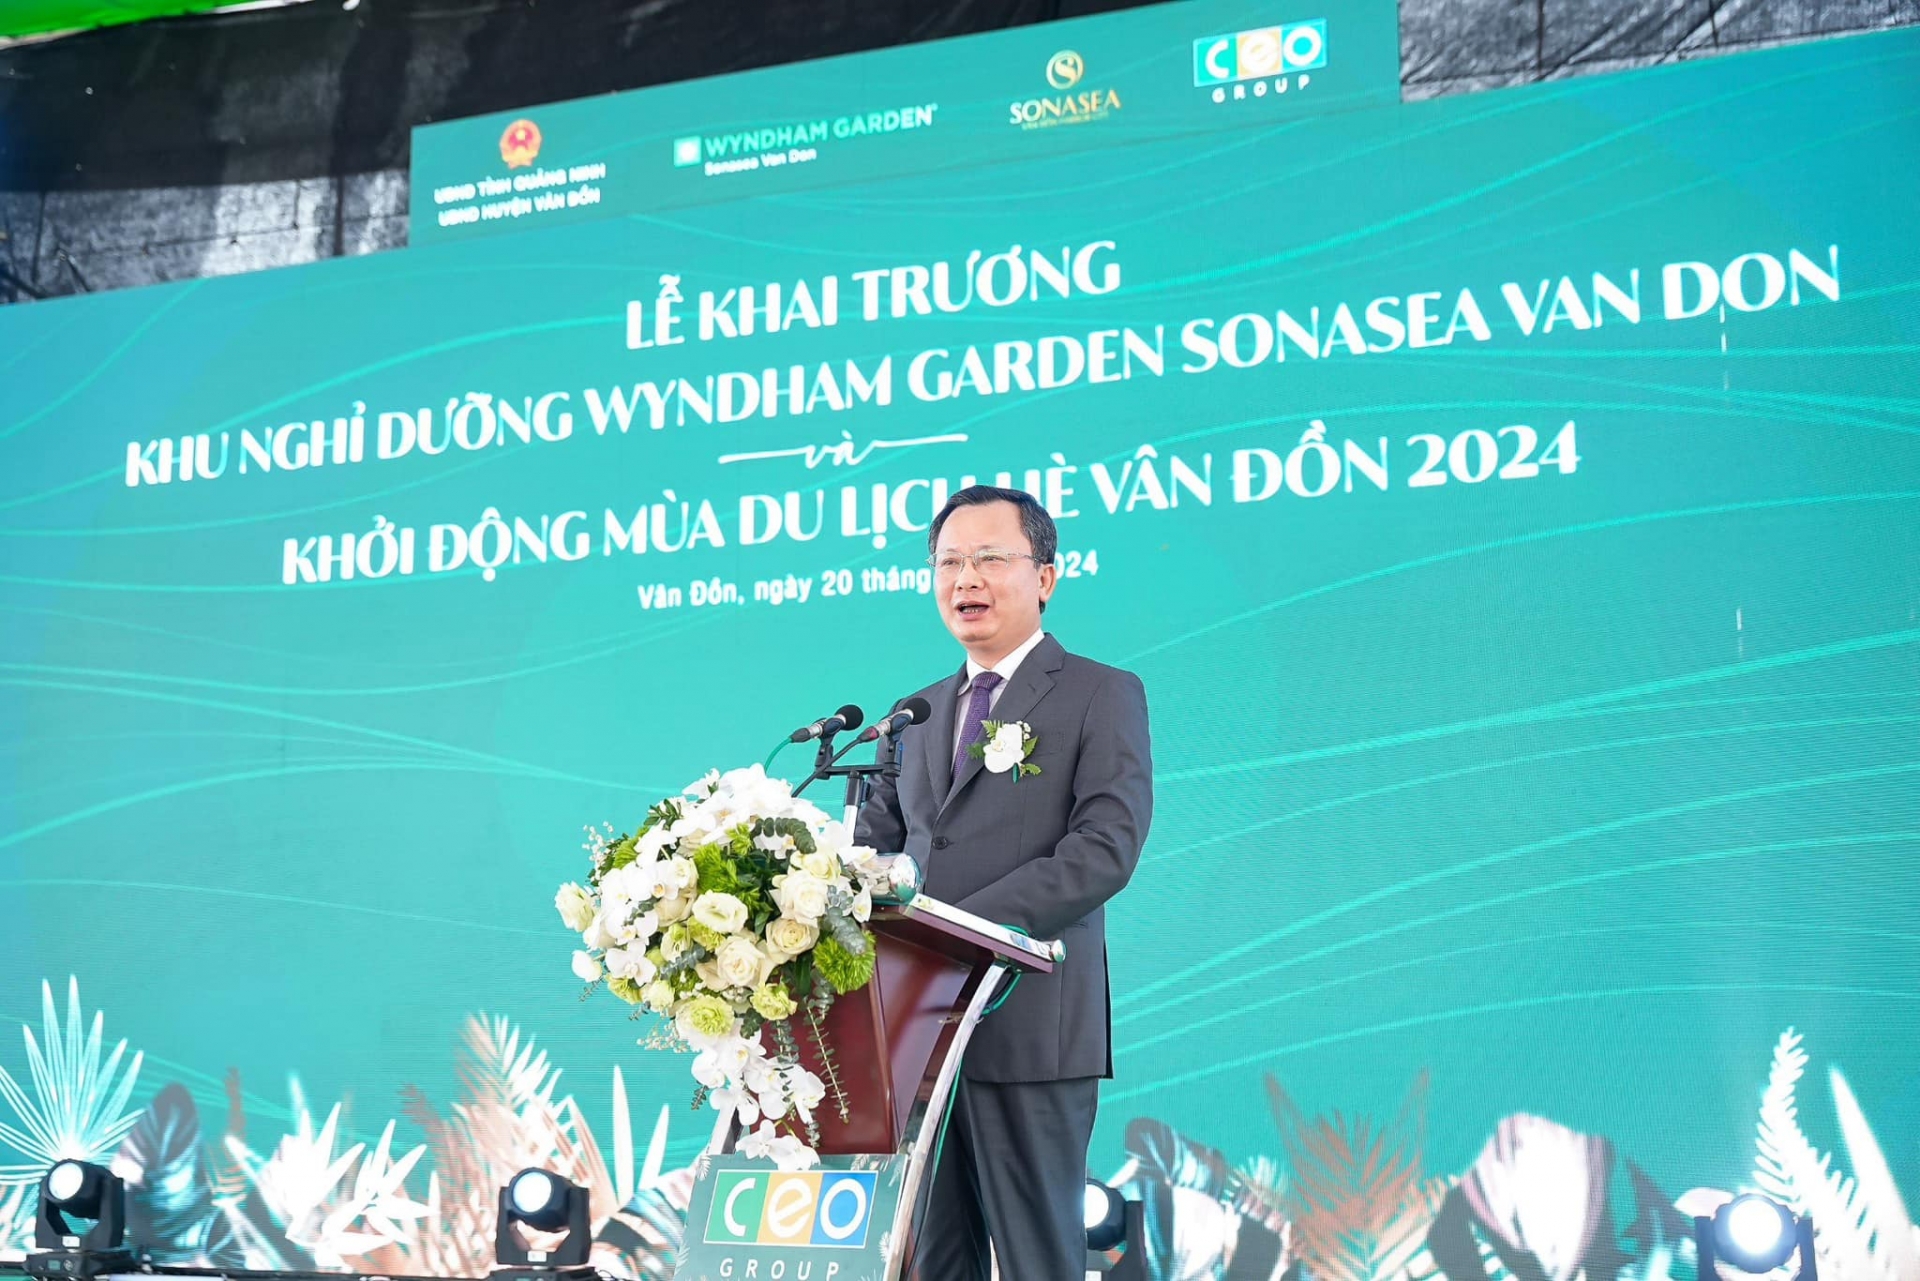 Quảng Ninh khai trương Khu nghỉ dưỡng Wyndham Garden Sonasea Van Don 5 sao đầu tiên tại Vân Đồn